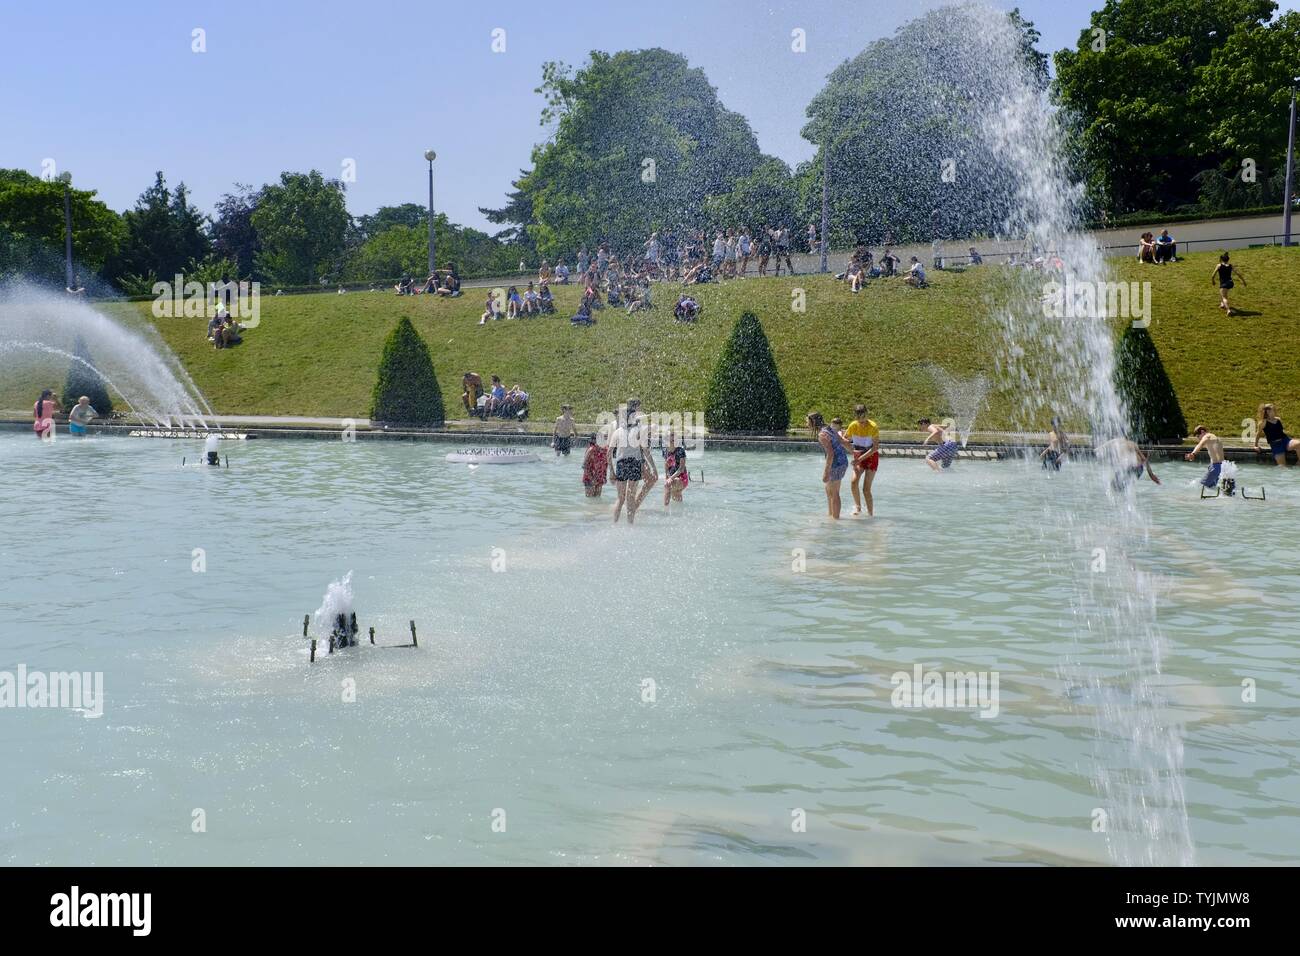 Paris essaie de faire face à la chaleur - parisiens de se rafraîchir dans les fontaines dans les jardins du Trocadéro, au cours de la chaleur extrême. Banque D'Images